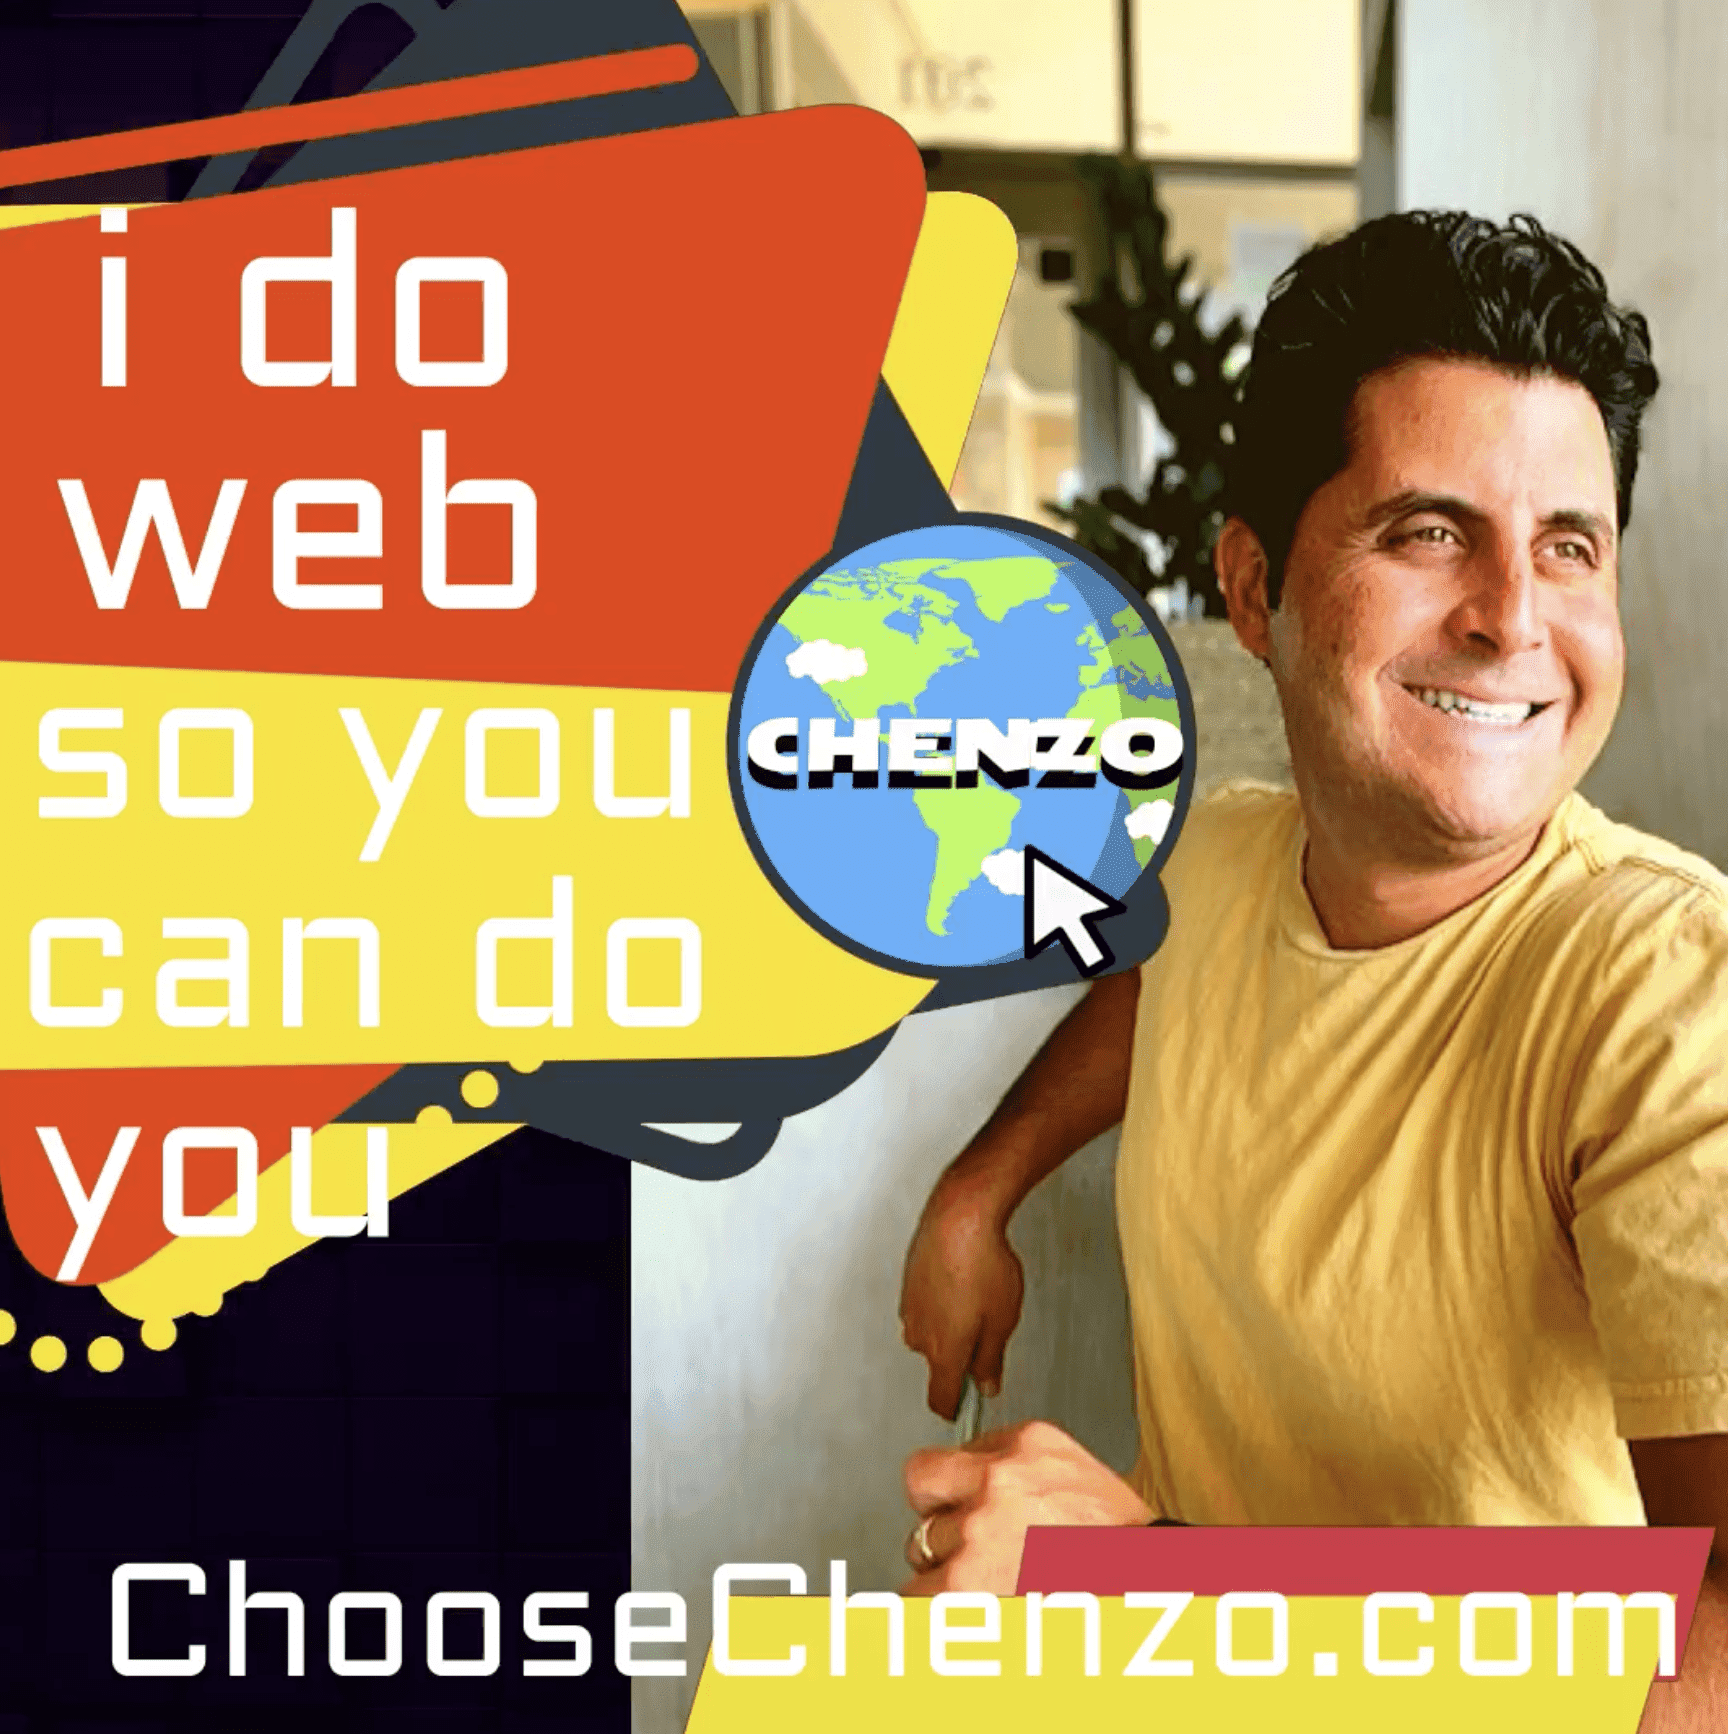 chenzo does web